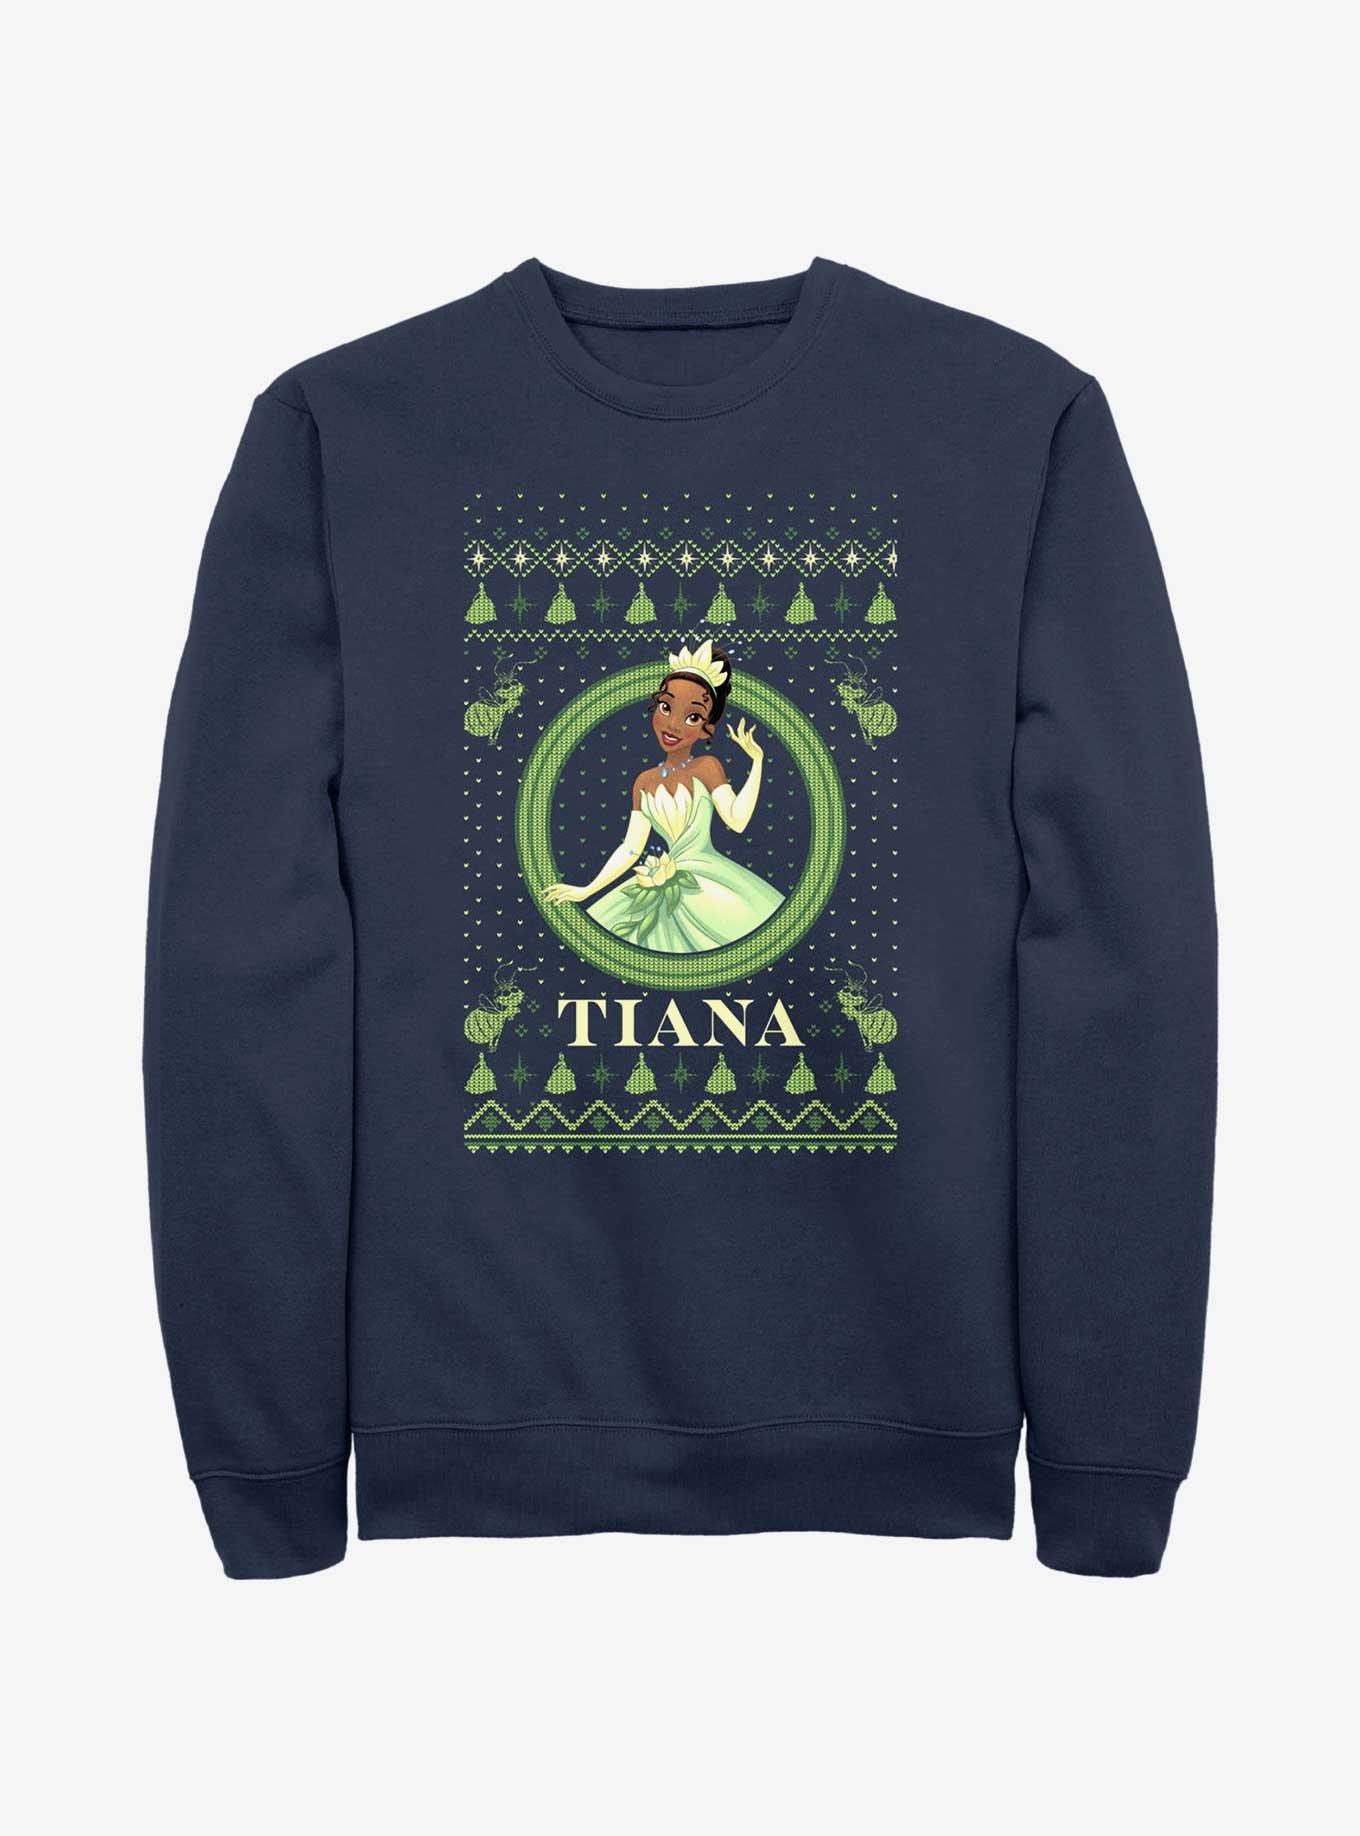 Disney Princess & The Frog Tiana Ugly Holiday Sweatshirt, NAVY, hi-res